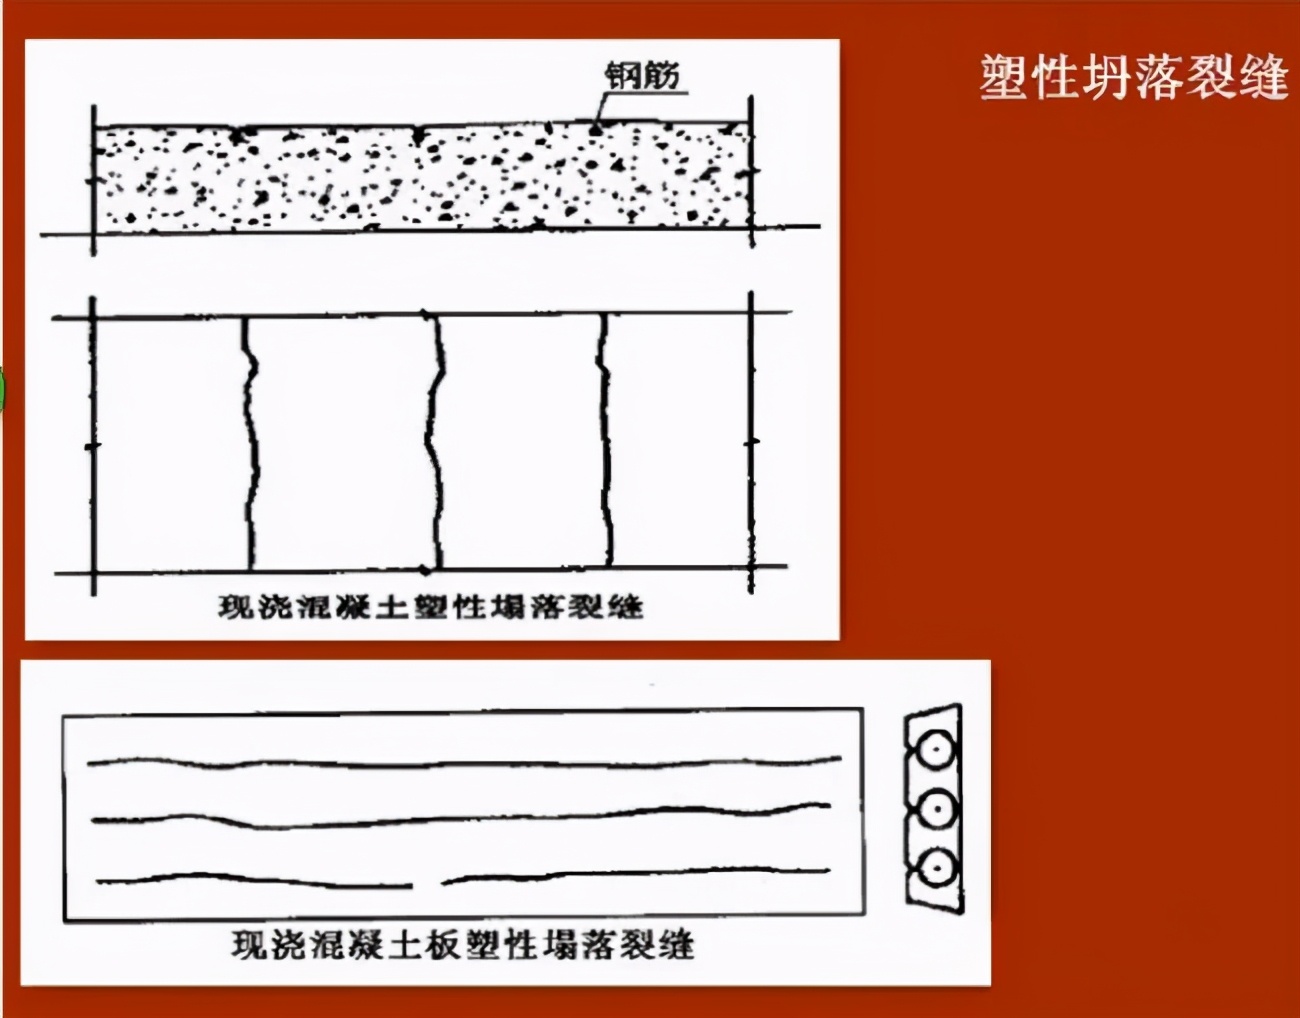 常见的混凝土裂缝分类及处理方法—卡本裂缝修补材料